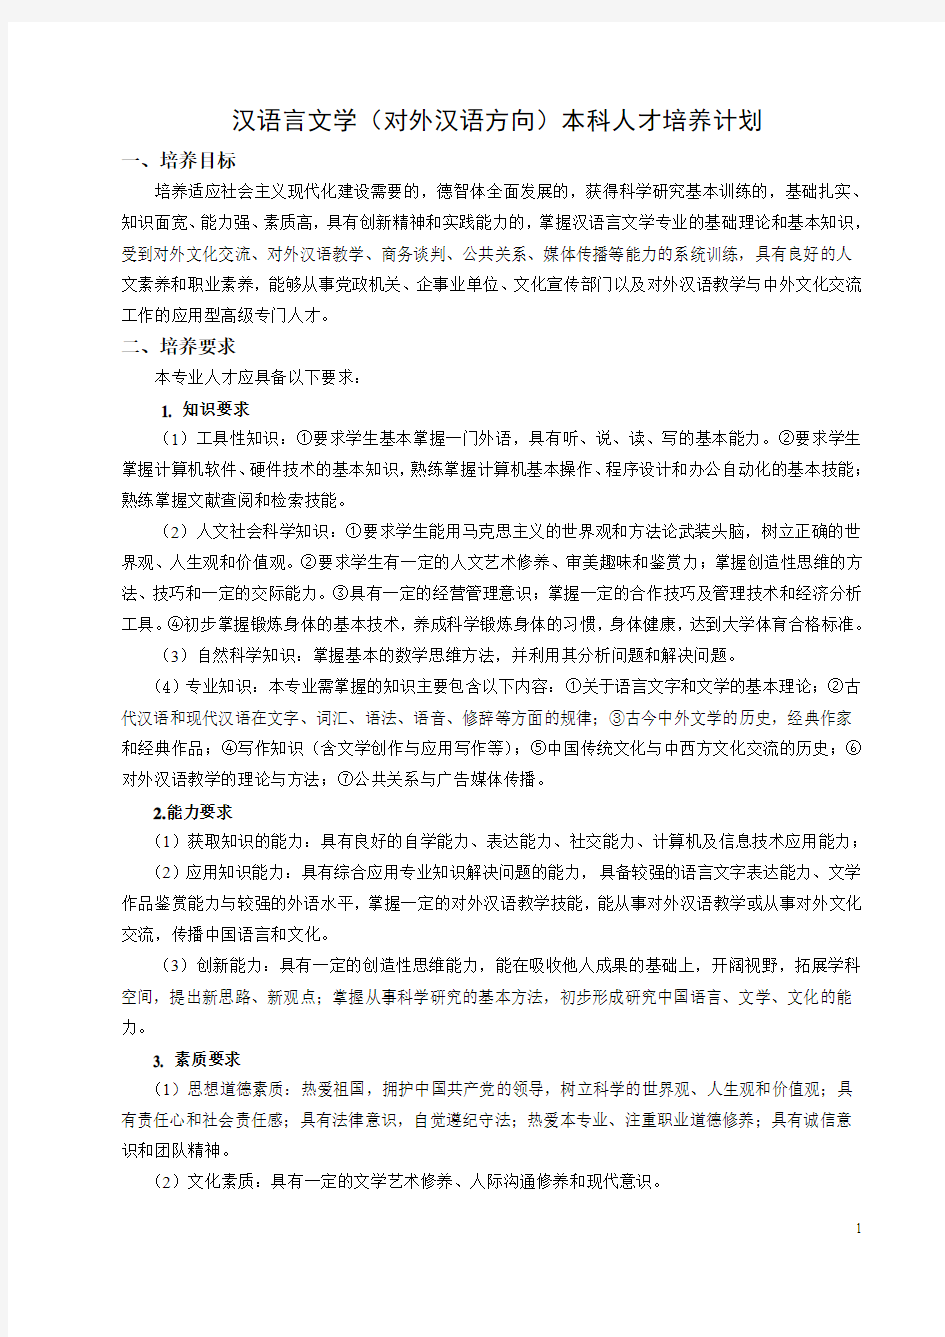 汉语言文学(对外汉语方向)本科人才培养计划